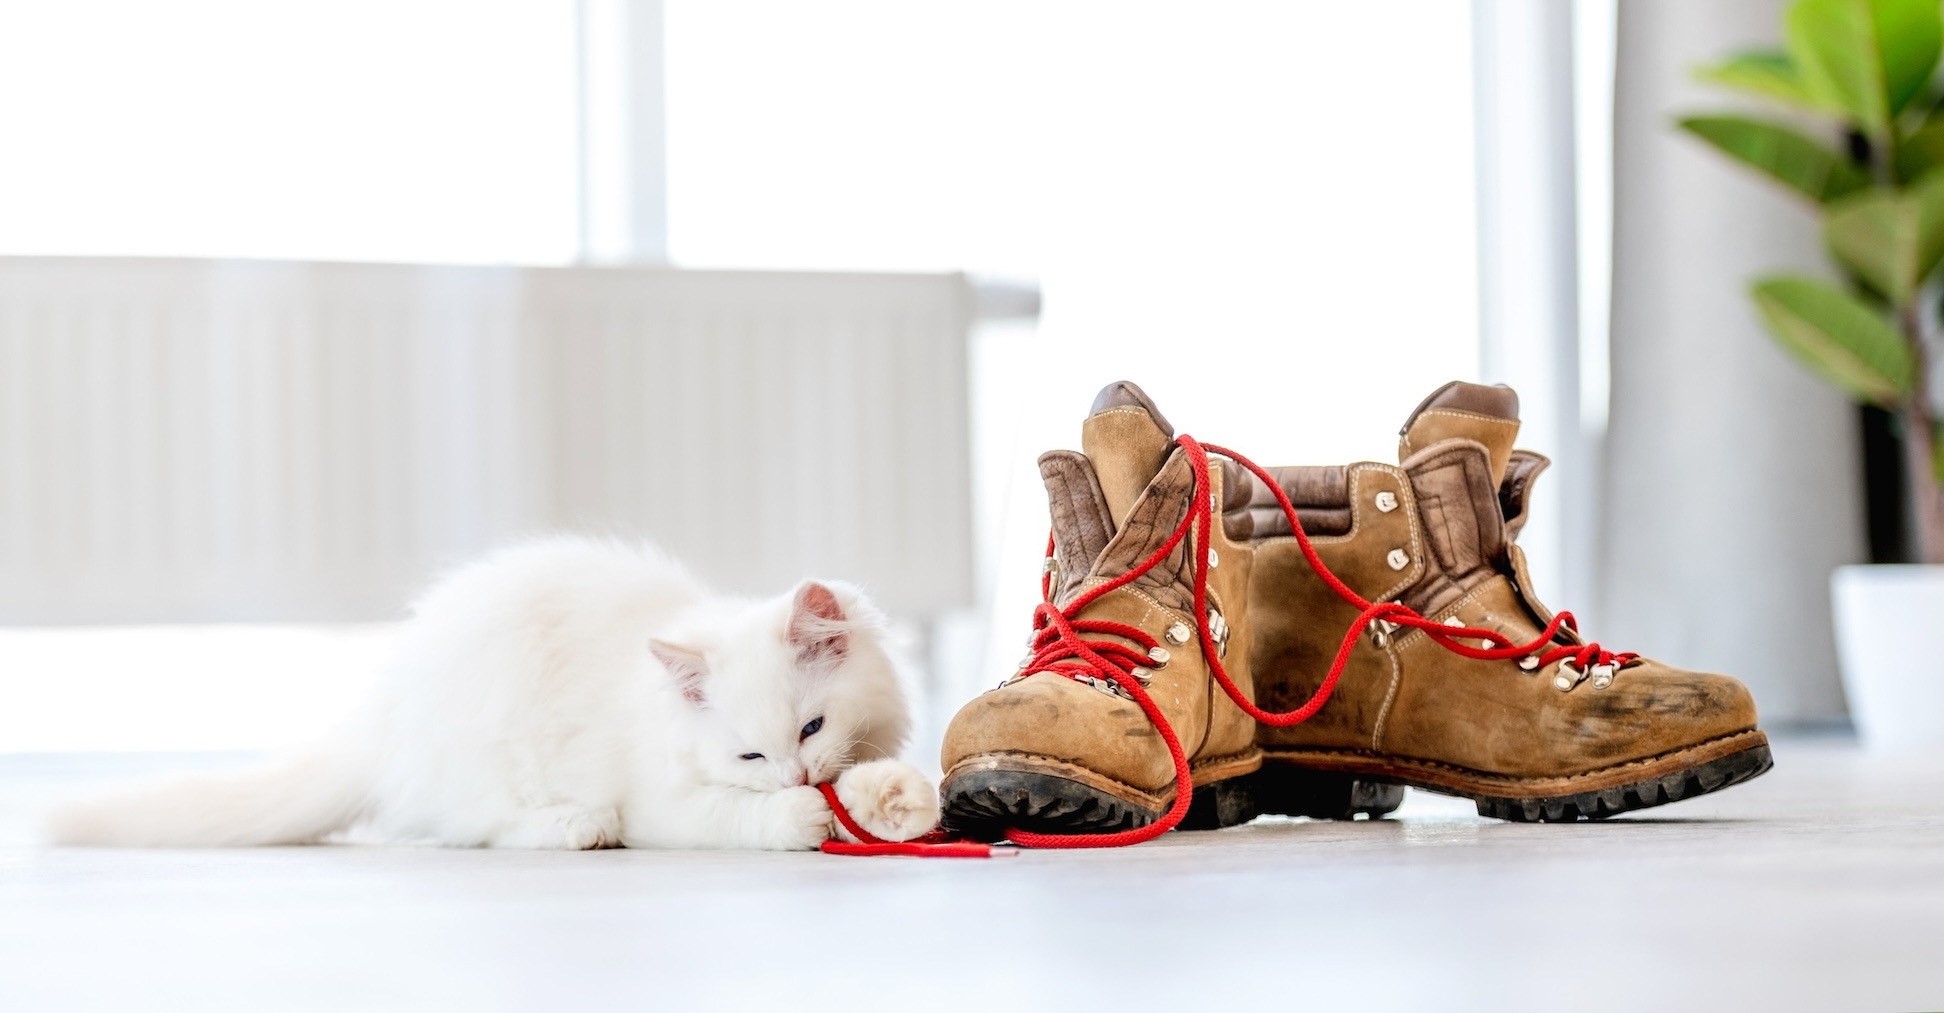 Weiße Katze sitzt neben Straßenschuhen und spielt mit Schuhbändern